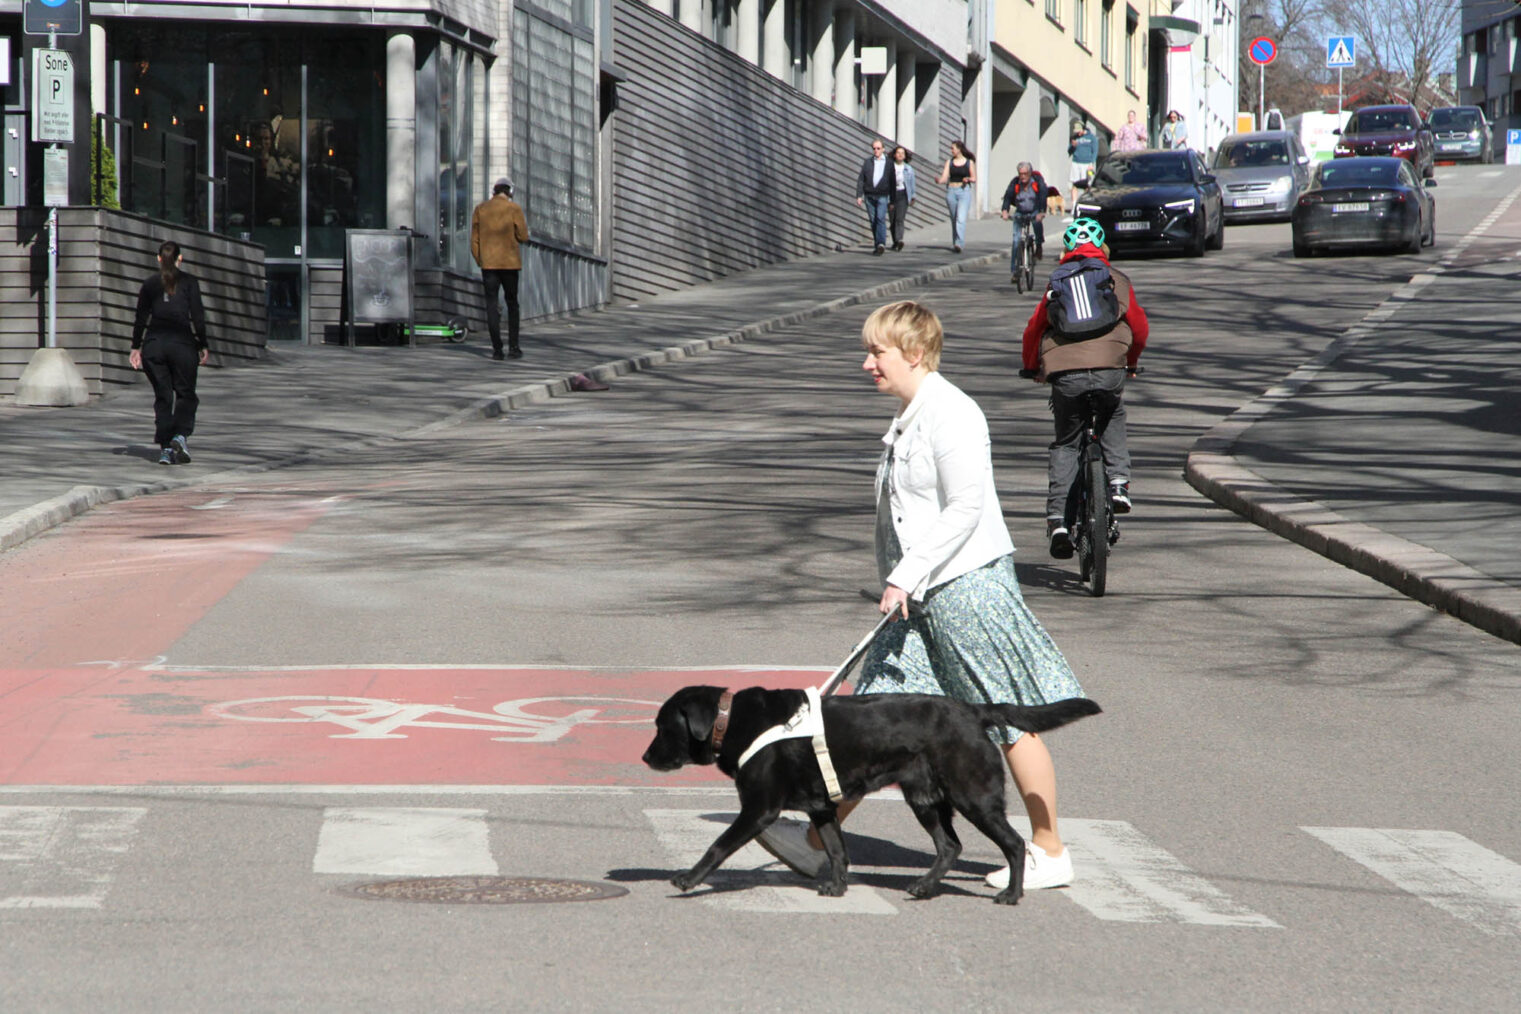 Gry Berg krysser fotgjengerfelt i gatemiljø, med hunden.